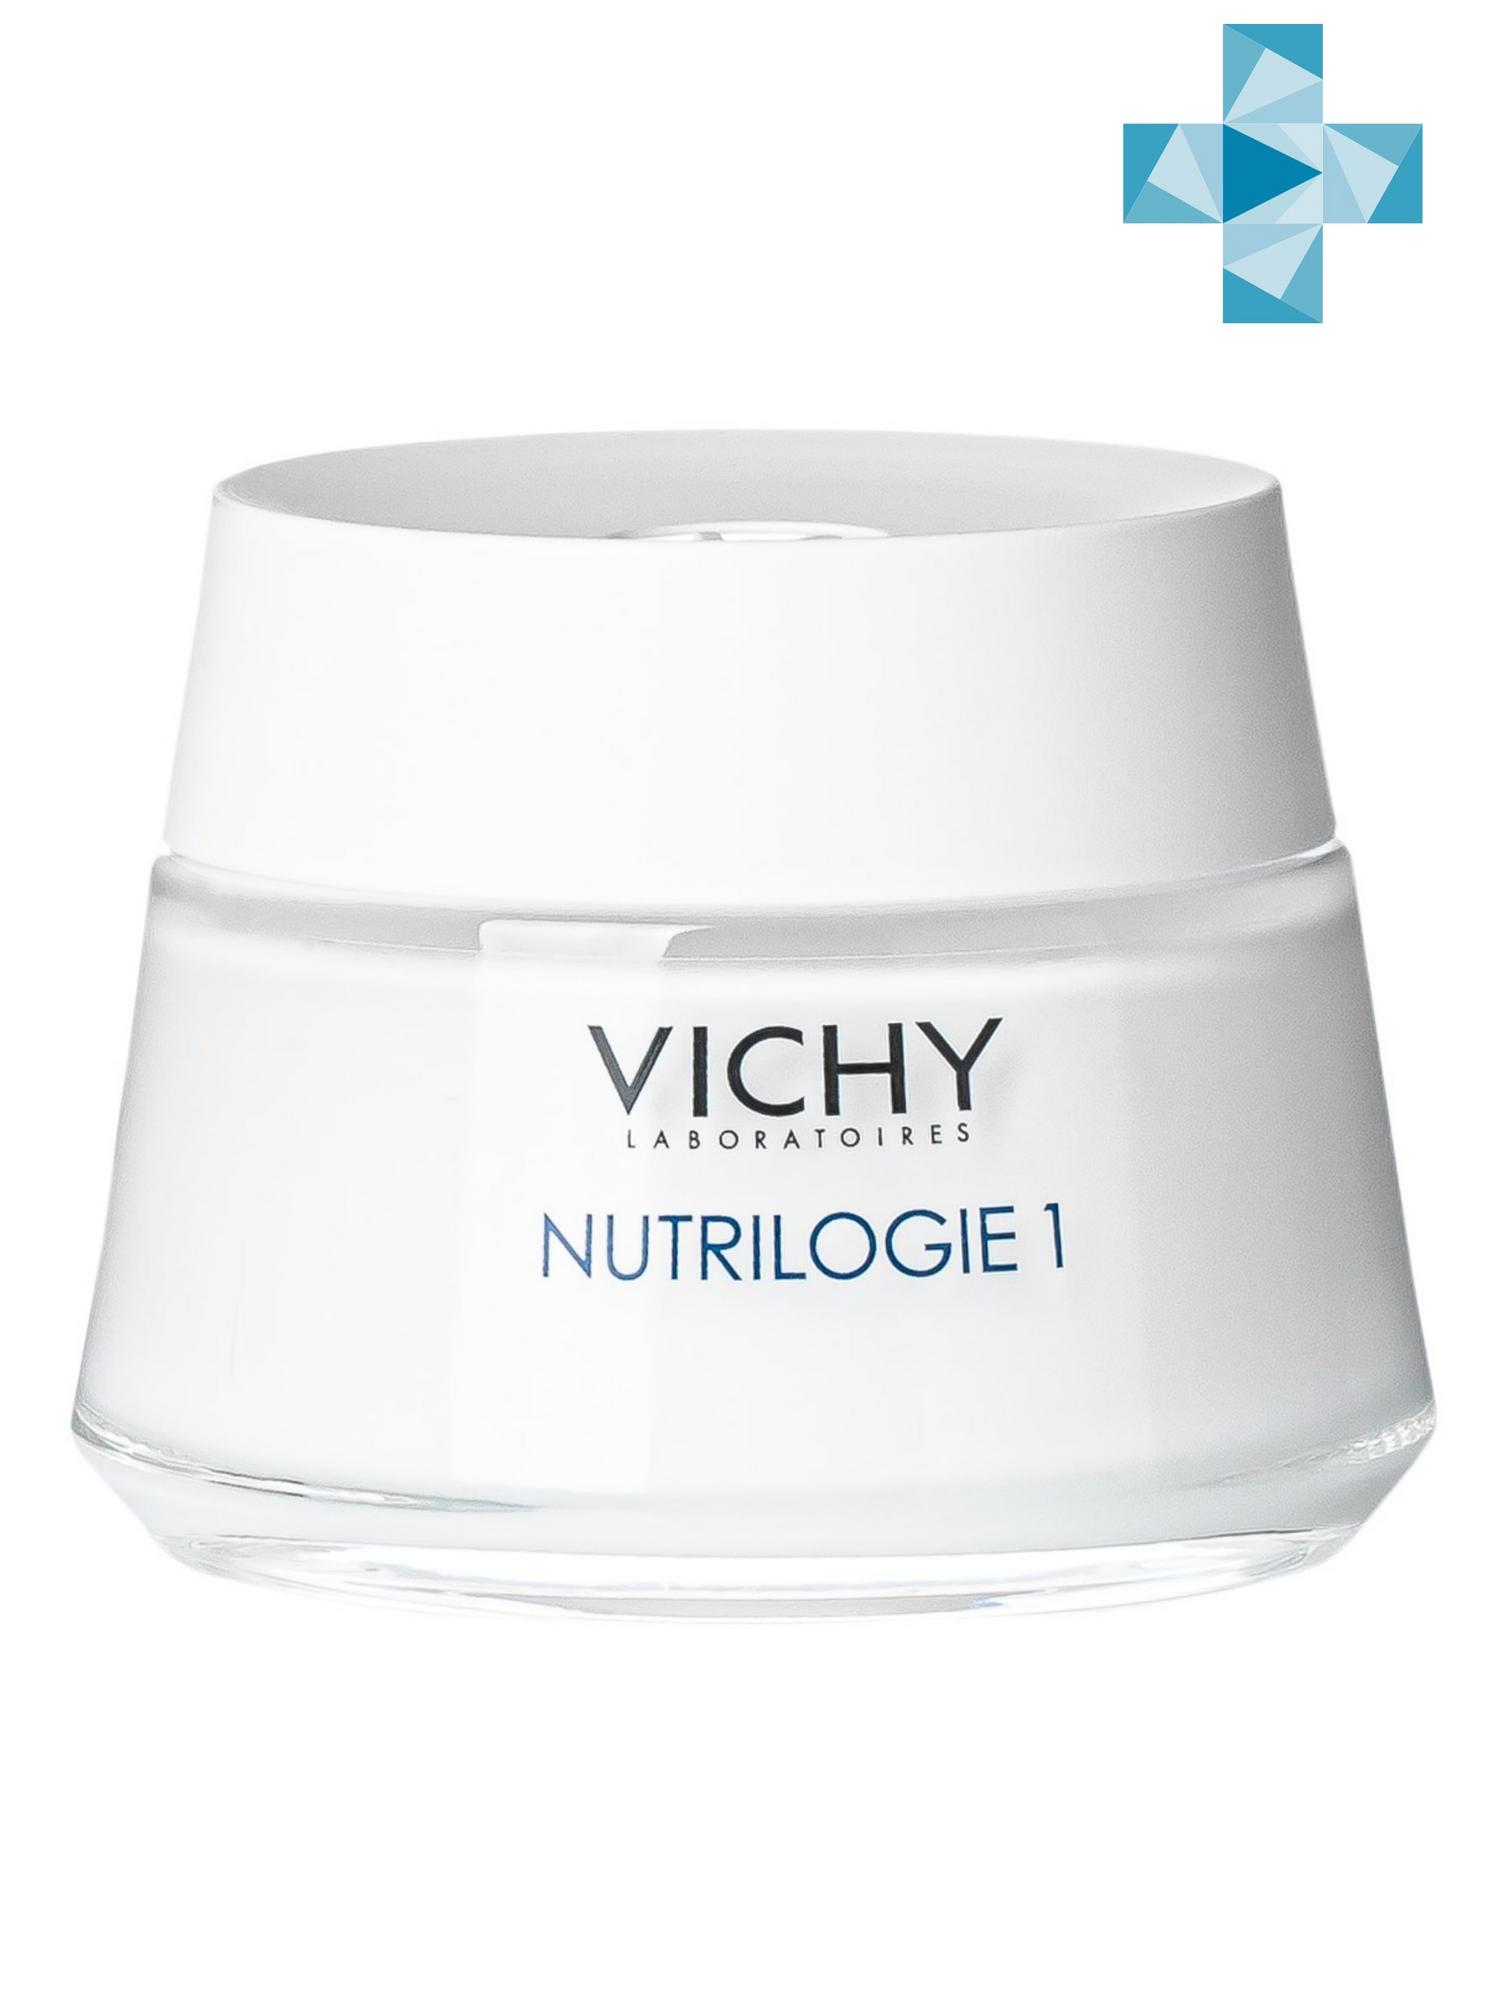 Vichy Kрем-уход глубокого действия для сухой кожи Нутриложи 1, 50 мл (Vichy, Nutrilogie)